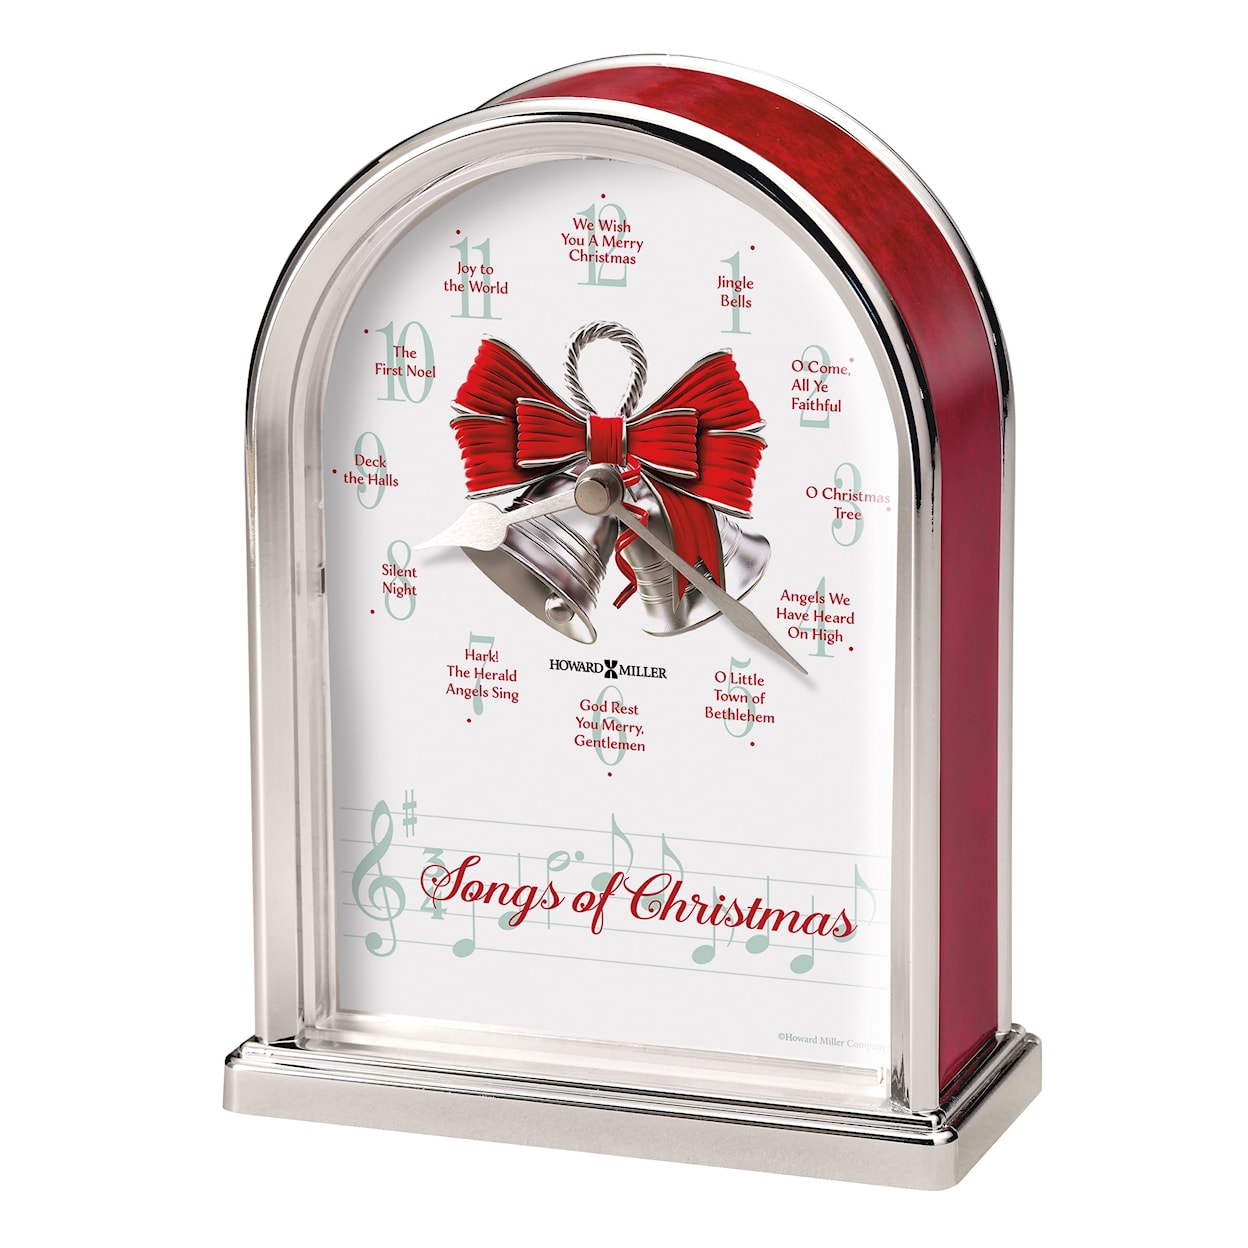 Howard Miller Howard Miller Songs Of Christmas Tabletop Clock